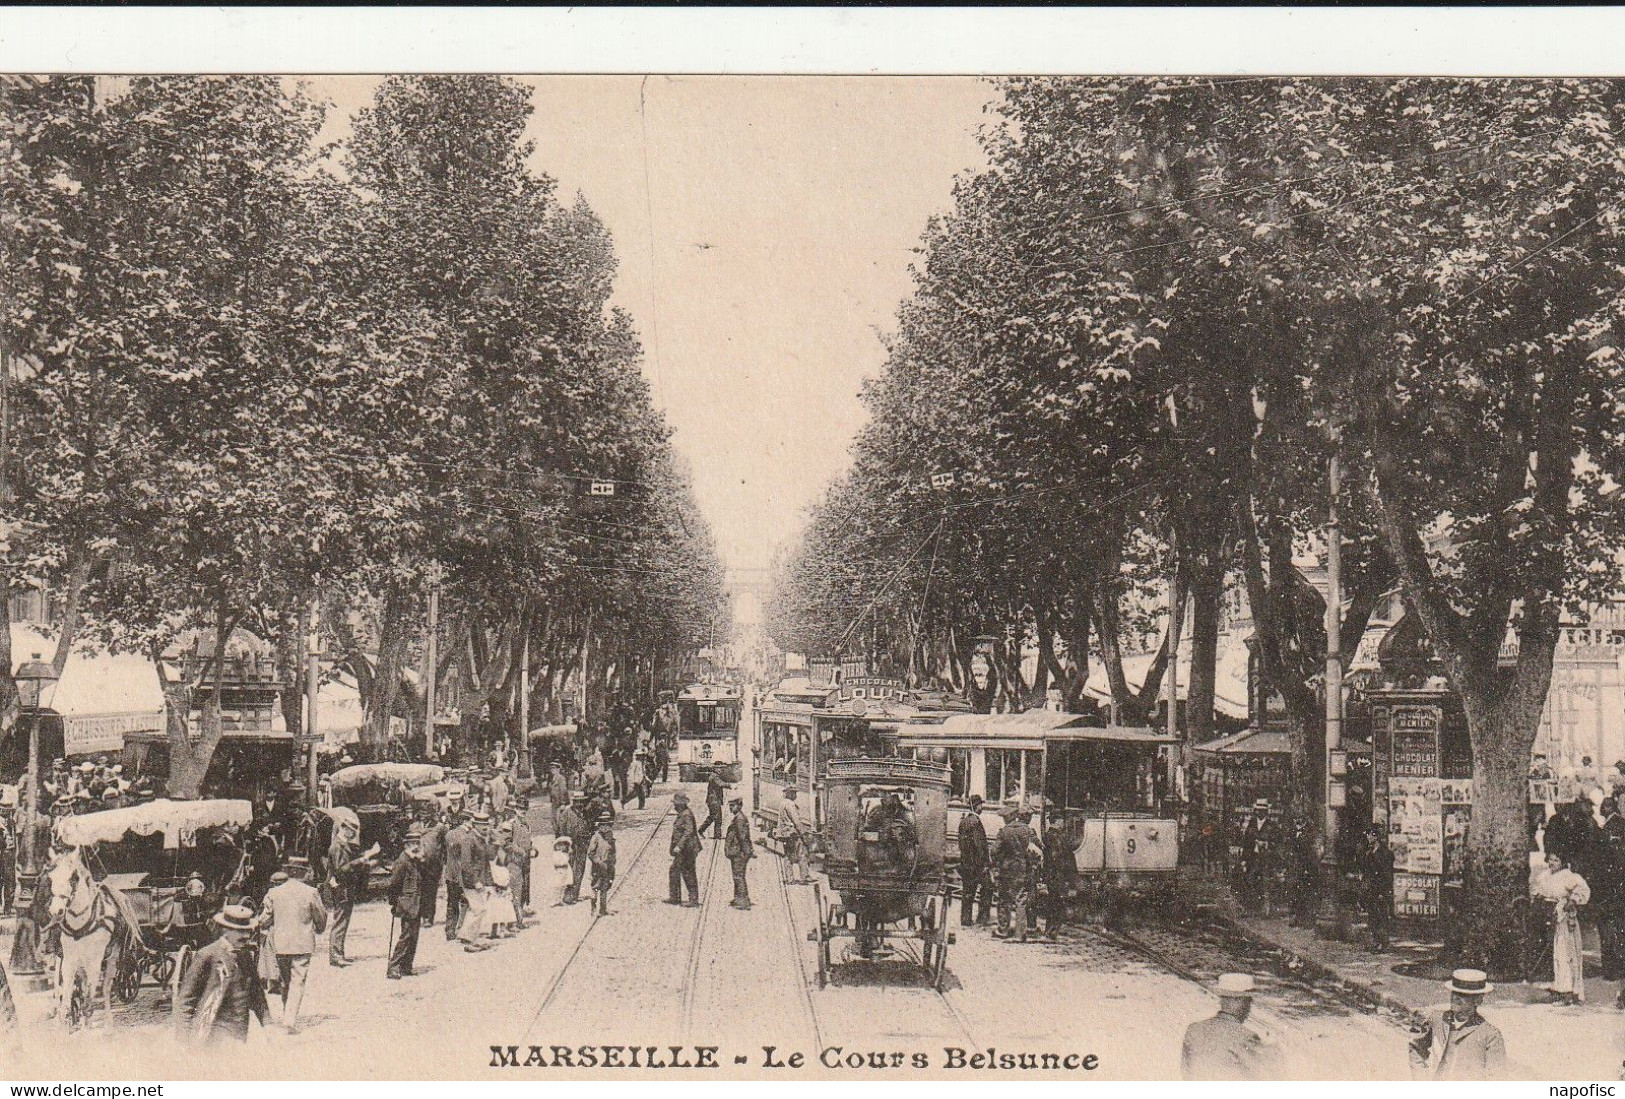 13-Marseille Le Cours Belsunce - The Canebière, City Centre